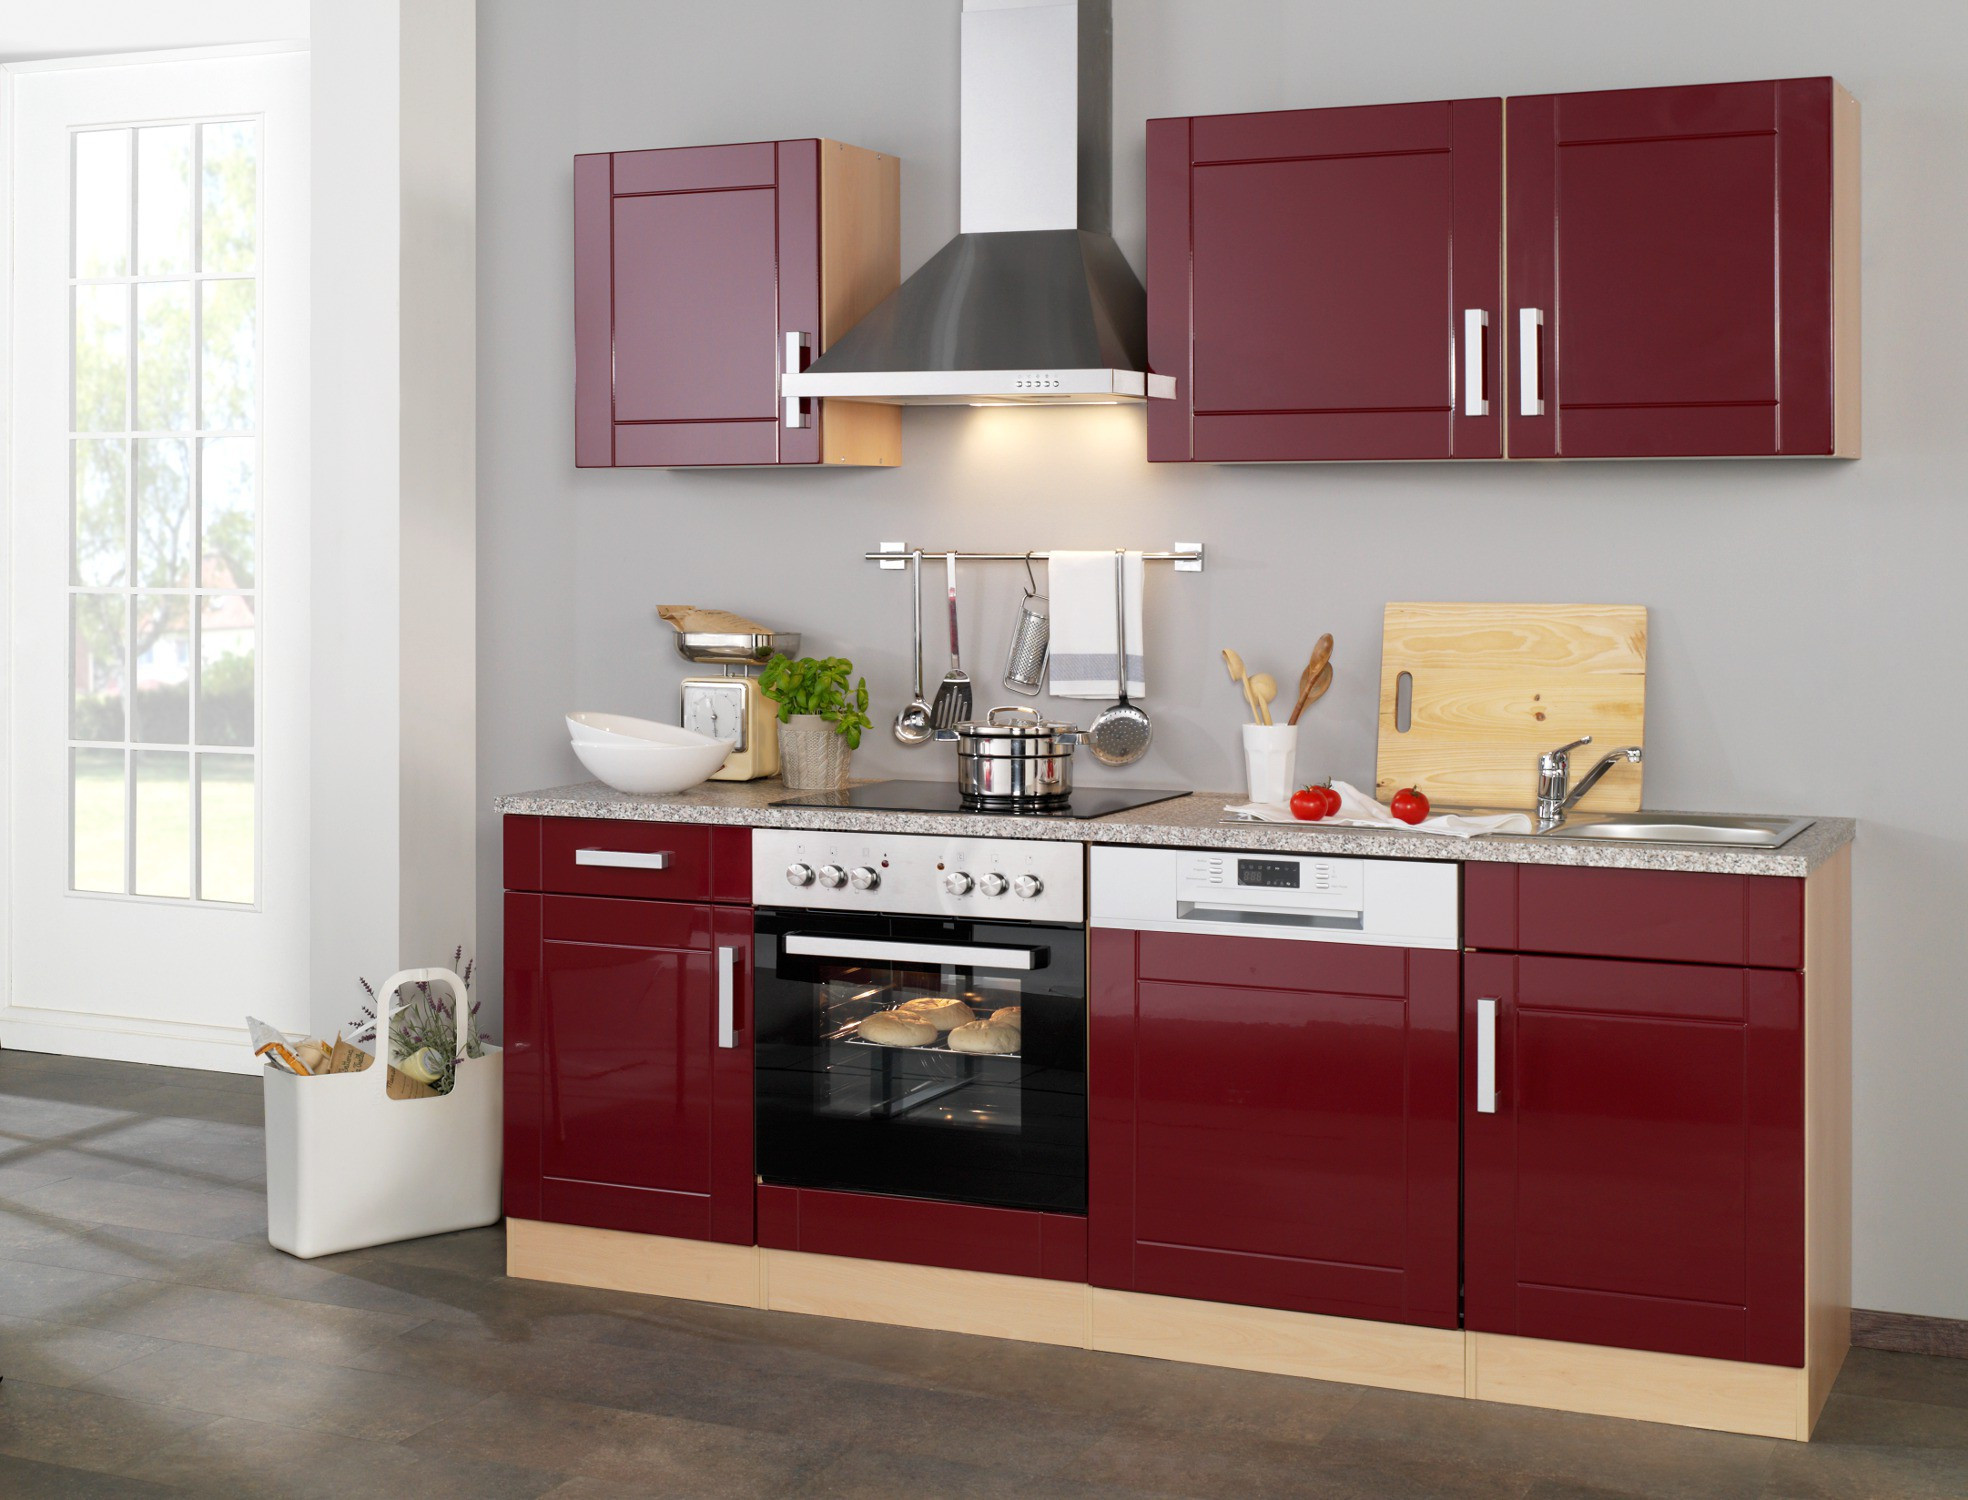 Küche Mit Geräten
 Küchenzeile VAREL Küche mit E Geräten Breite 220 cm